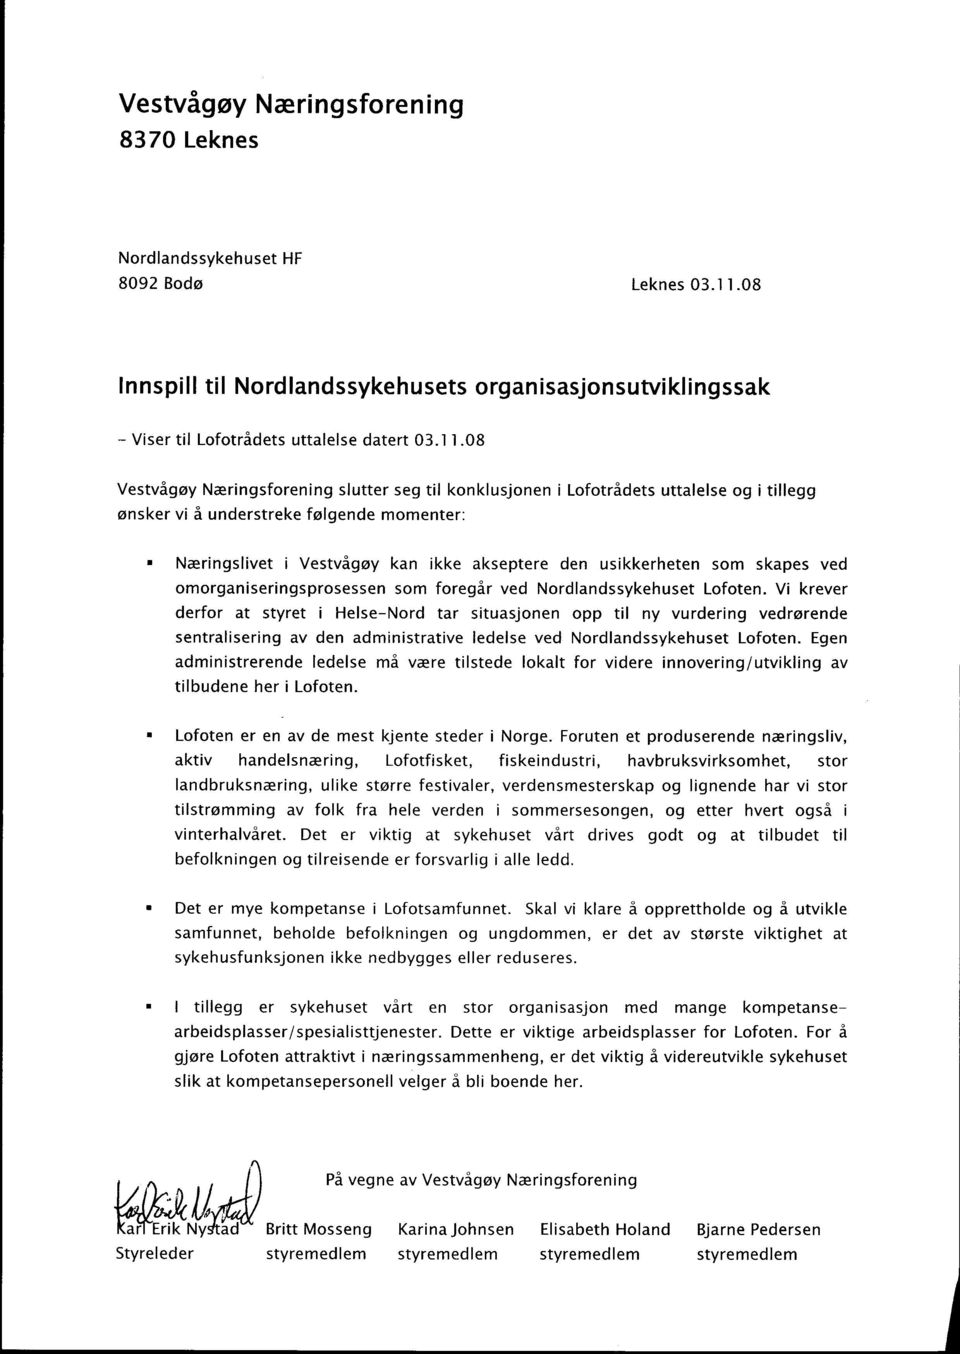 08 Vestvågøy Næringsforening slutter seg til konklusjonen i Lofotrådets uttalelse og i tillegg ønsker vi å understreke følgende momenter: n Næringslivet i Vestvågøy kan ikke akseptere den